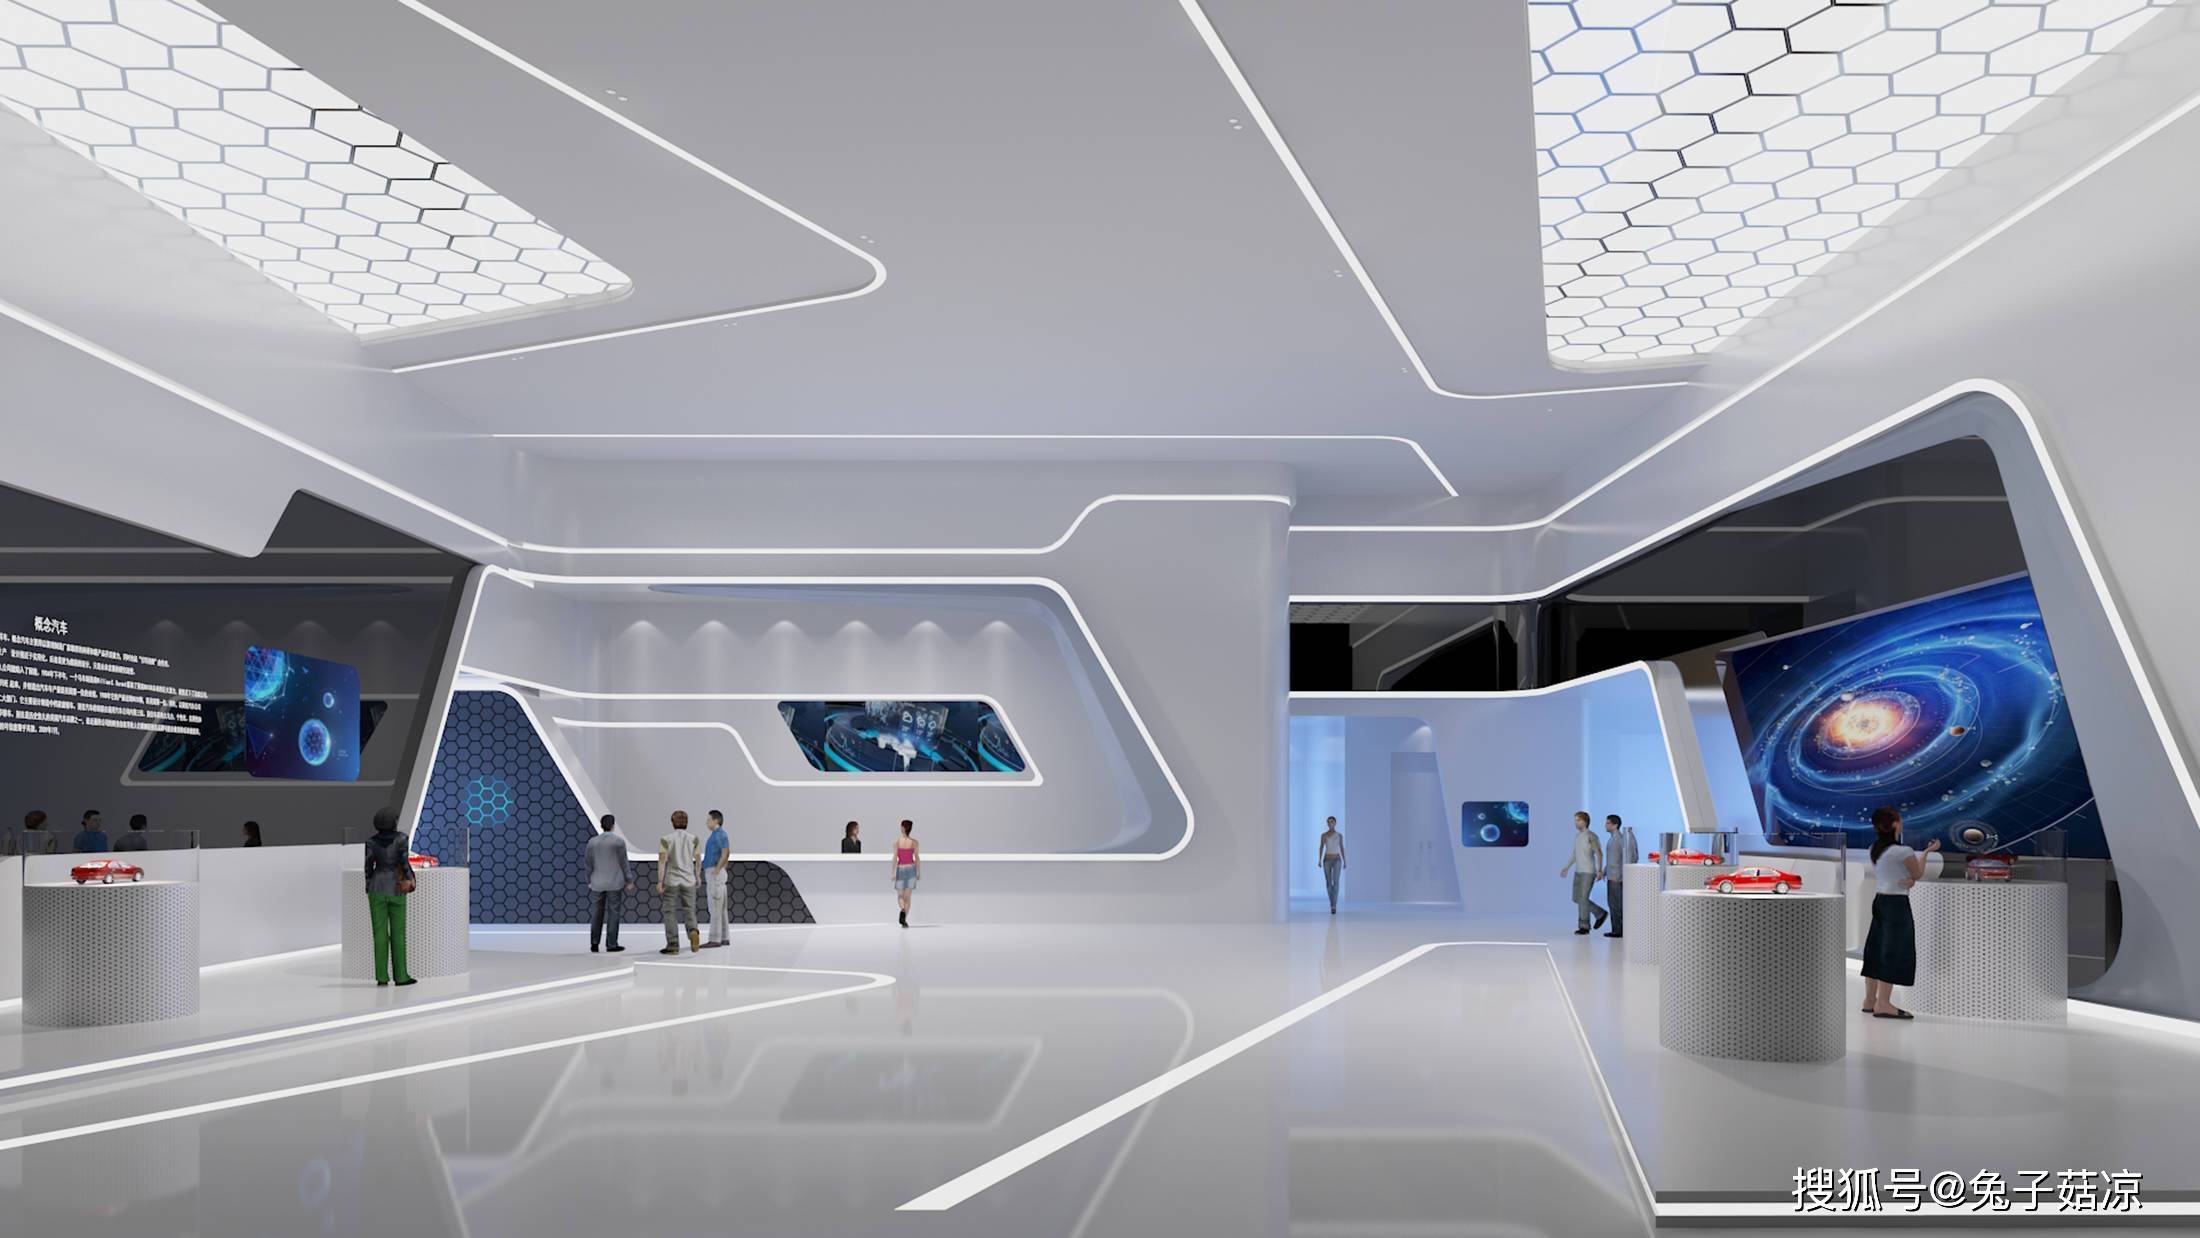 在展示环境中,空间的流动性十分重要,其依据展厅的功能而设计